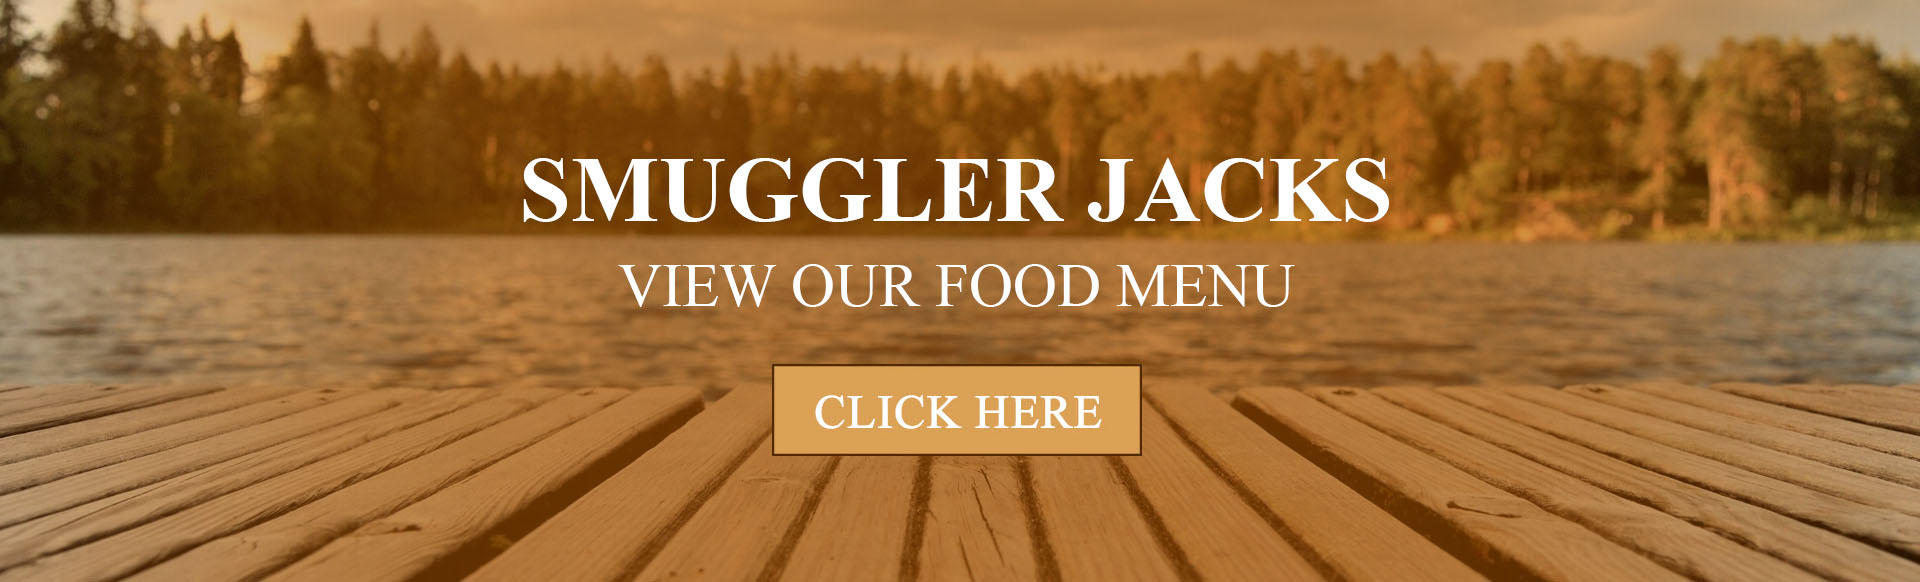 Smuggler Jack's